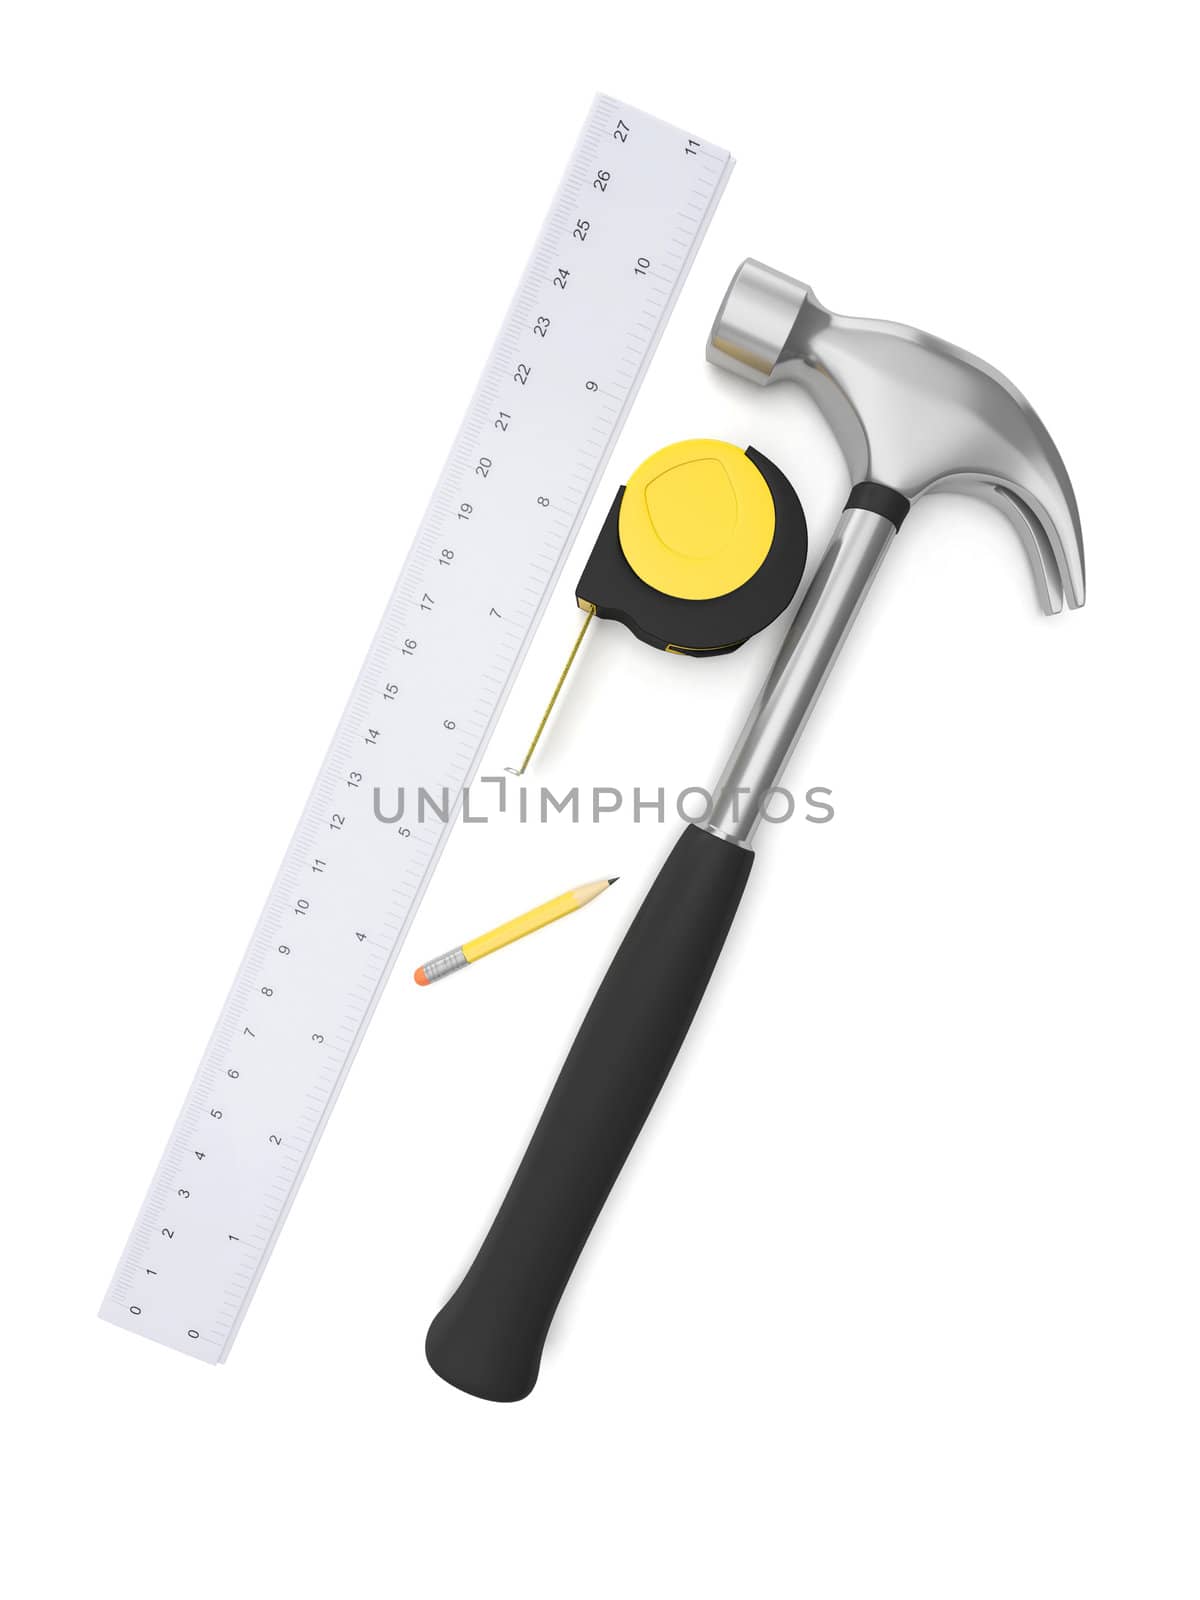 3d illustration: hammer, ruler, pencil on white background by kolobsek